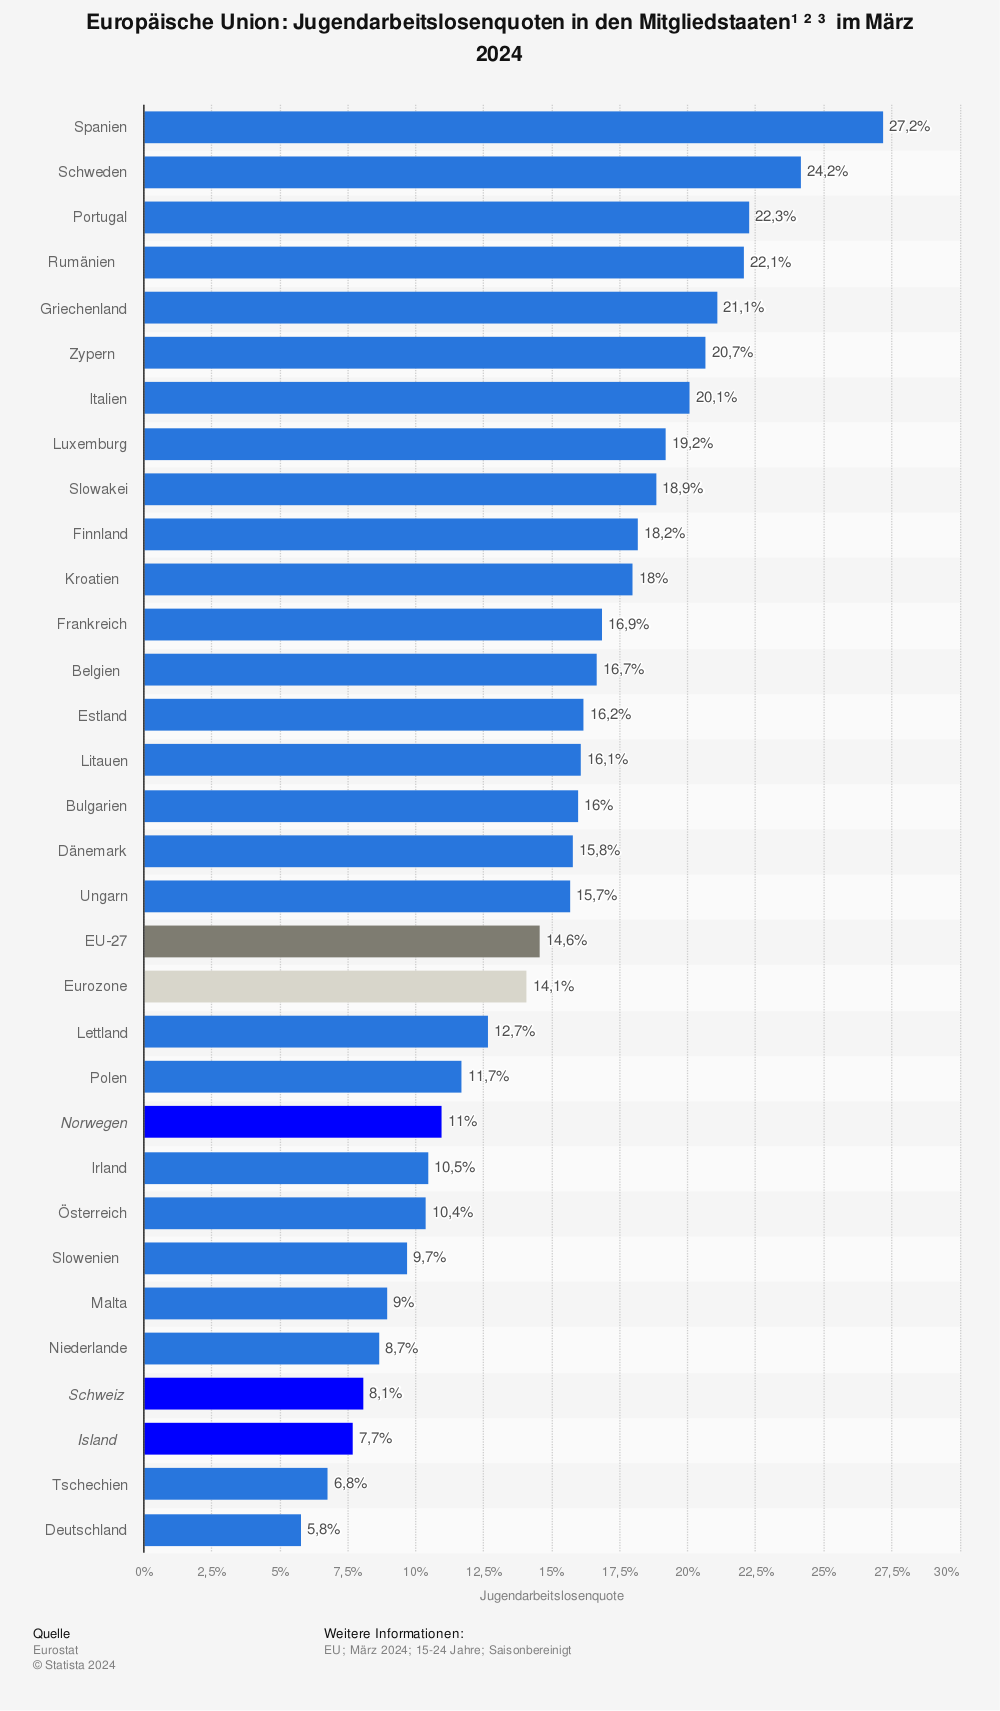 Jugendarbeitslosenquote in den EU-Ländern September 2013